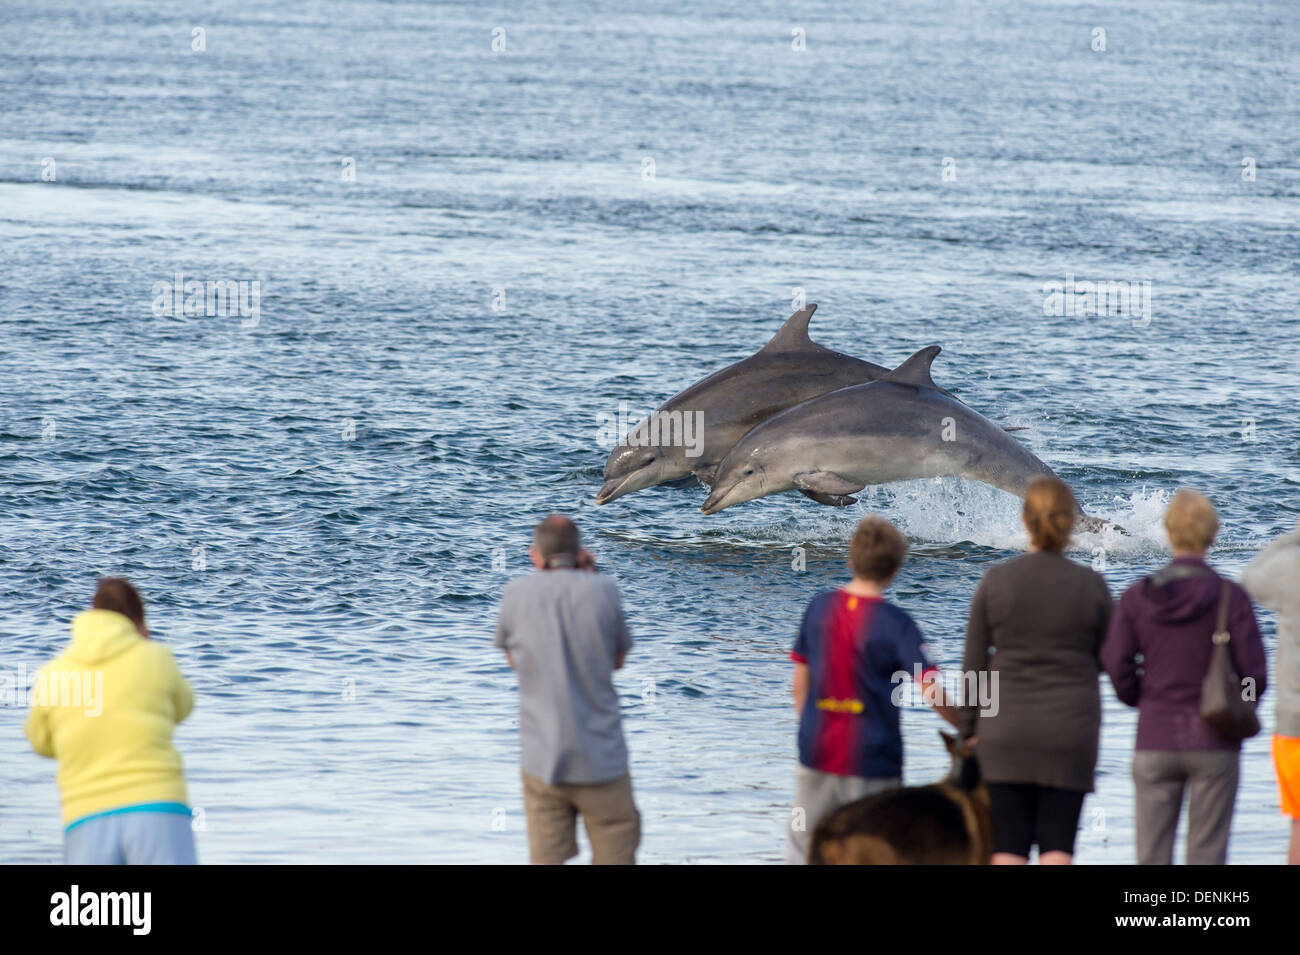 Comune dal naso a bottiglia dolphin (Tursiops truncatus) - punto Chanonry, Scotland, Regno Unito Foto Stock